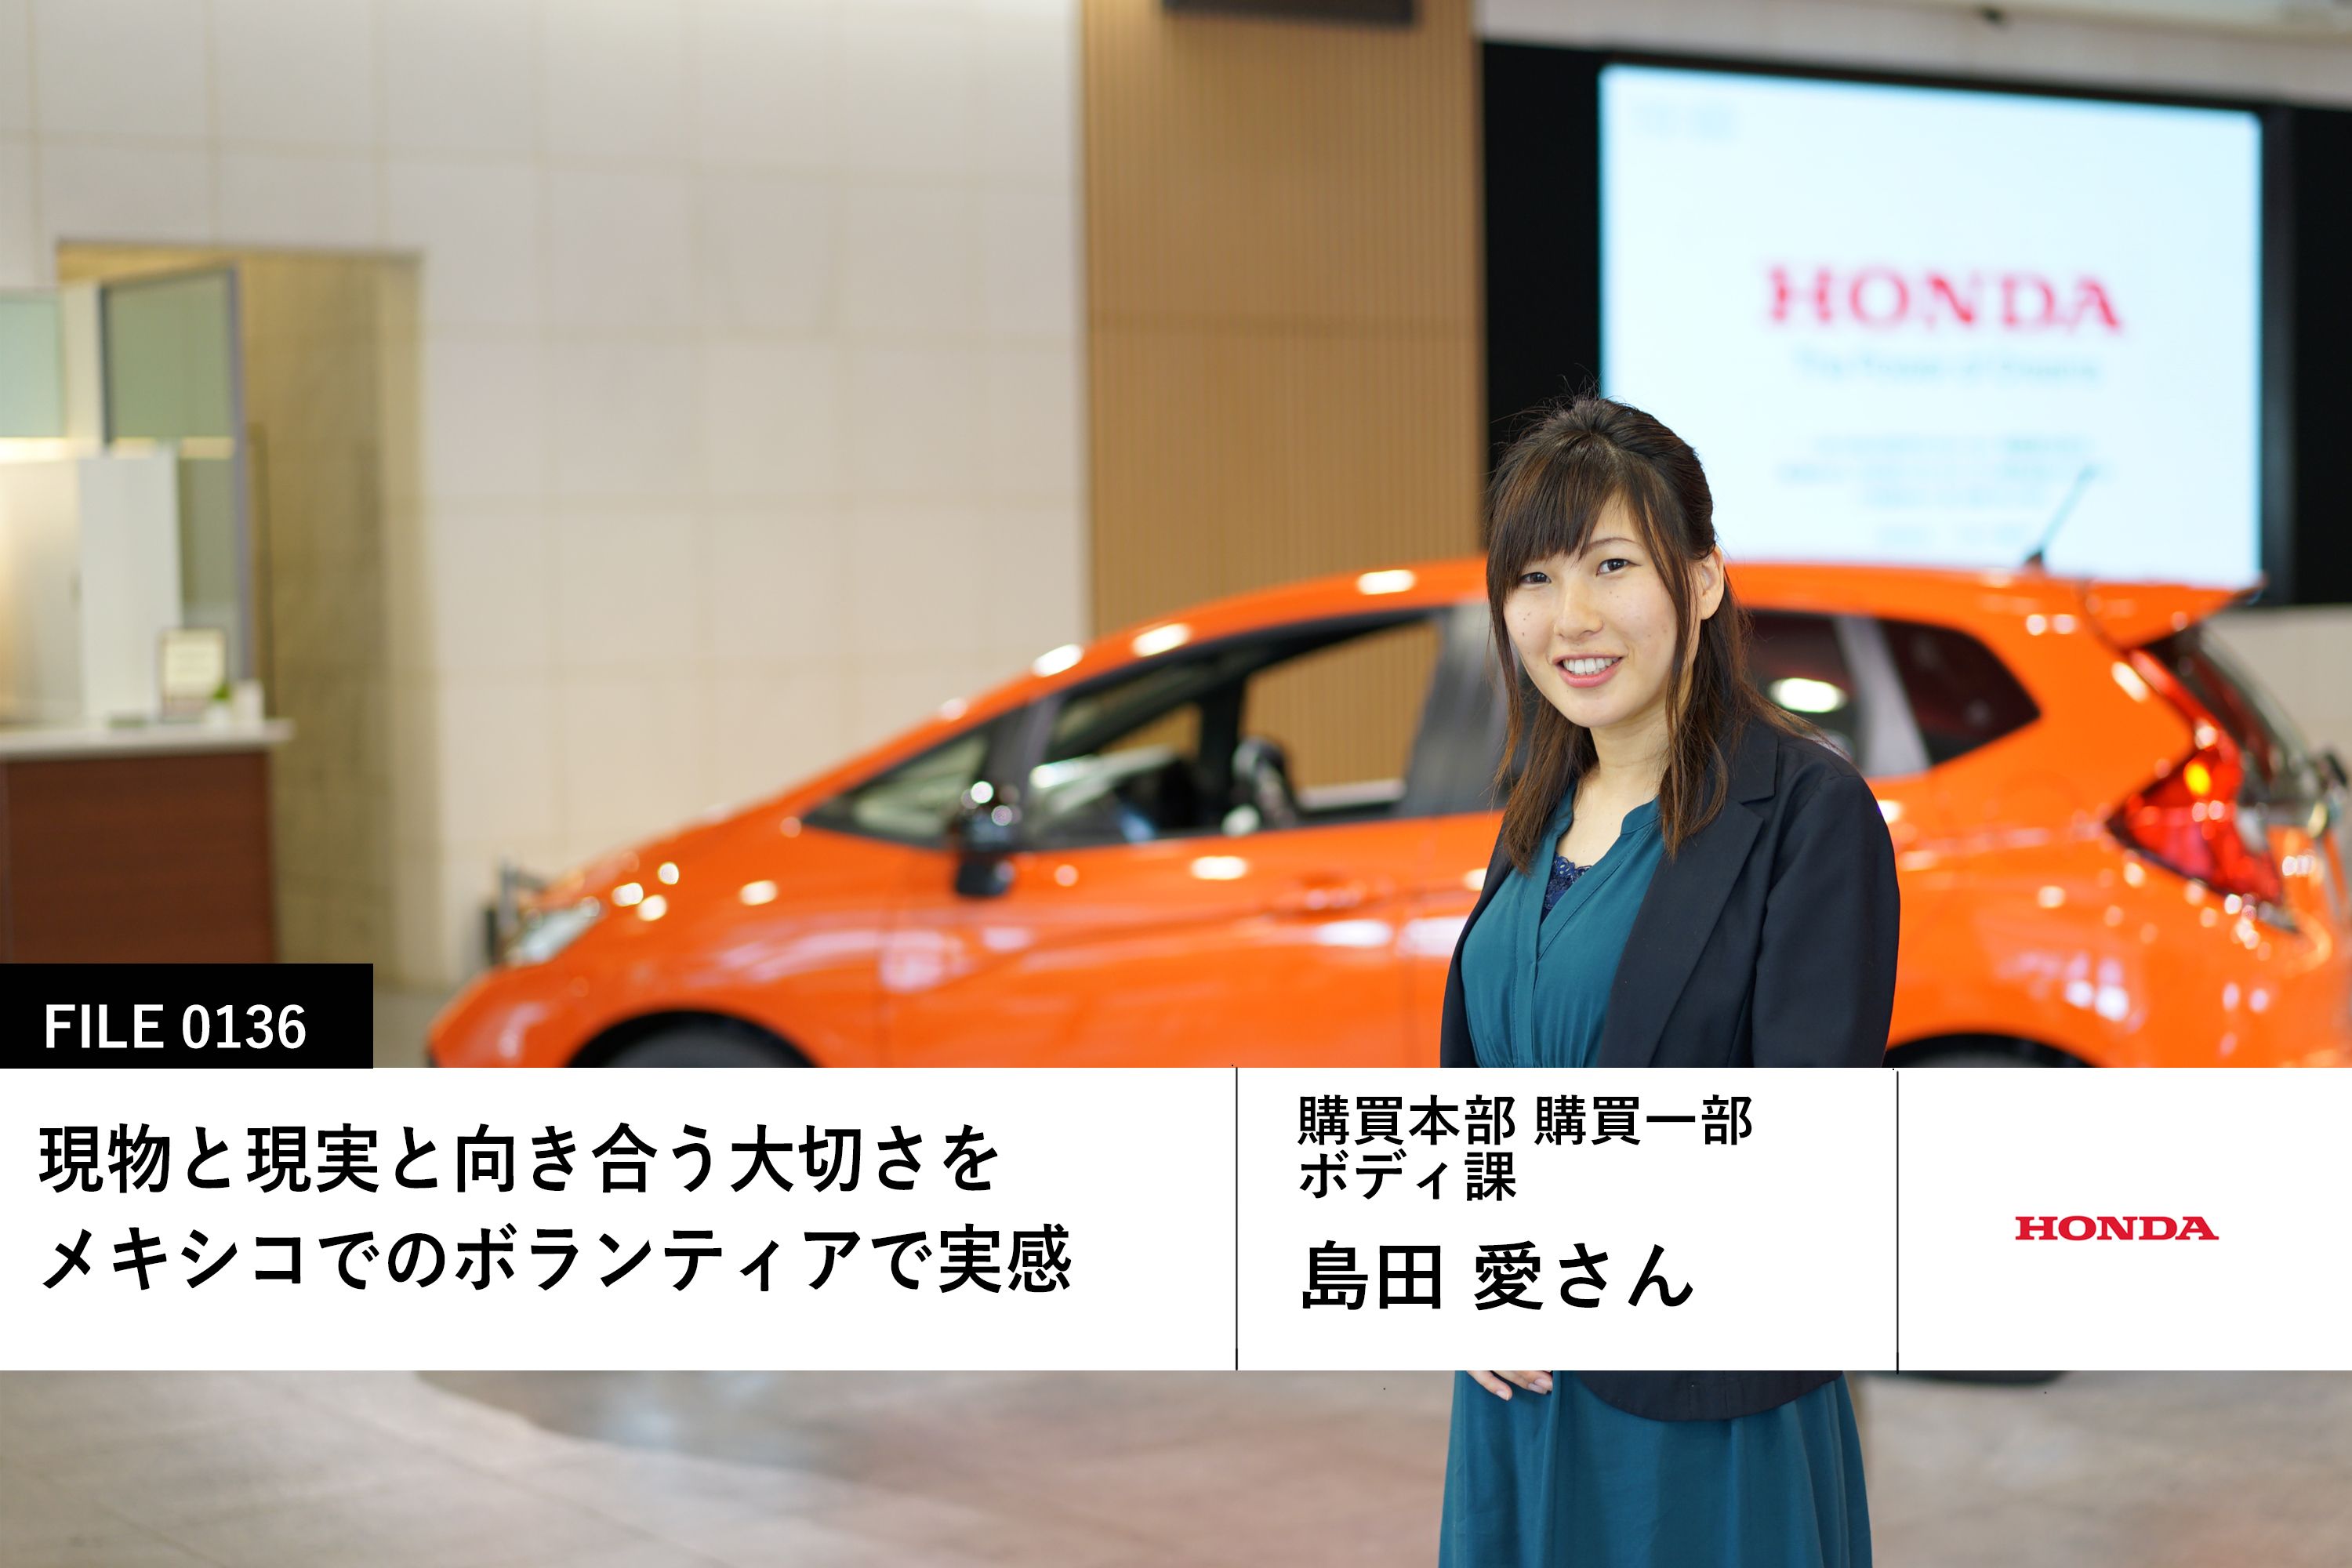 Hondaの島田 愛さん